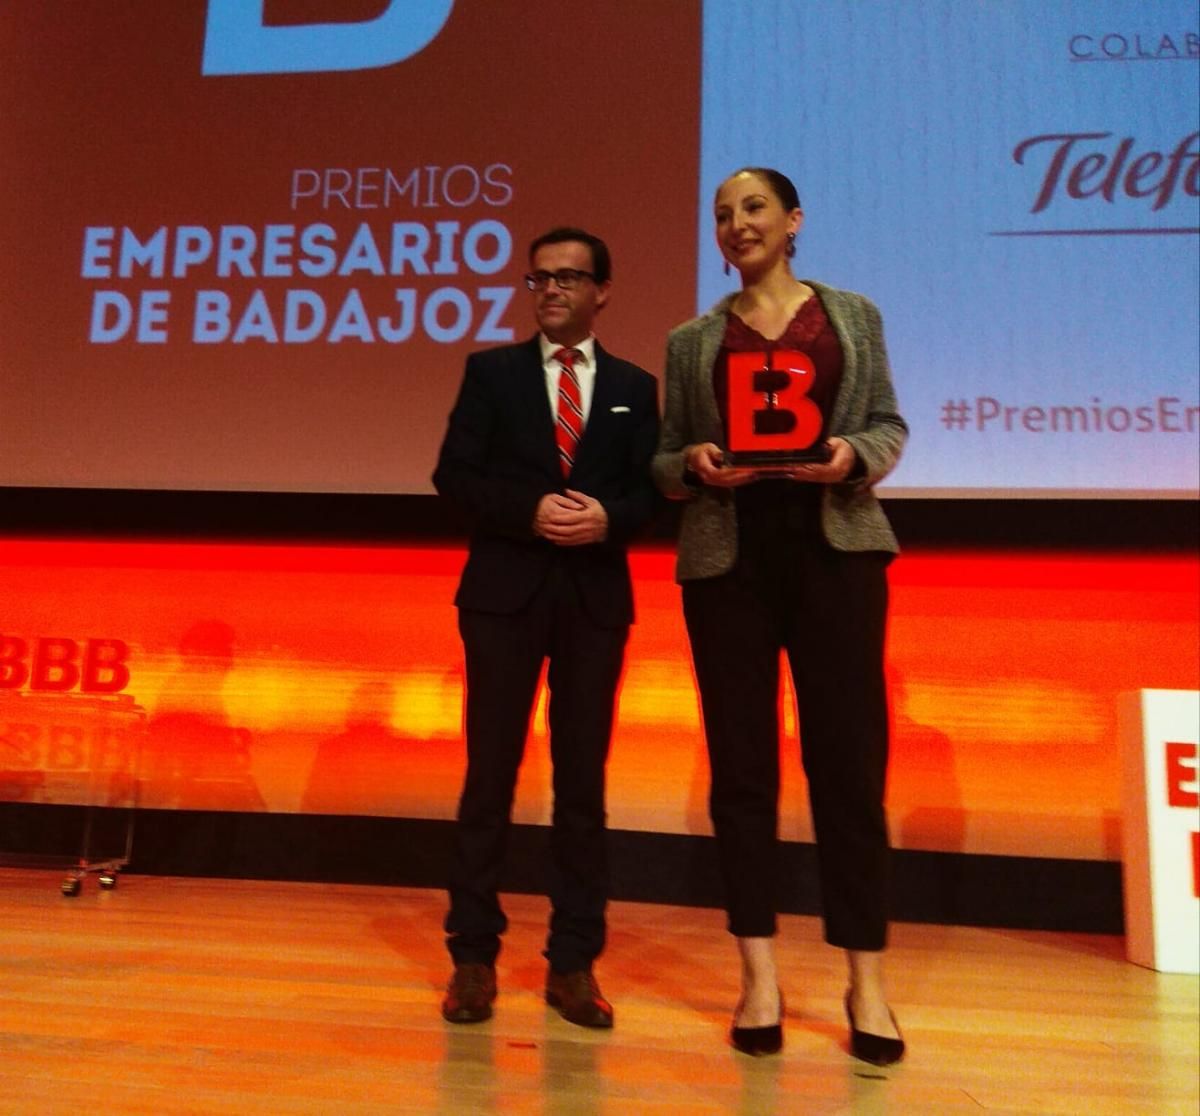 Los momentos de la entrega de los premios Empresario de Badajoz